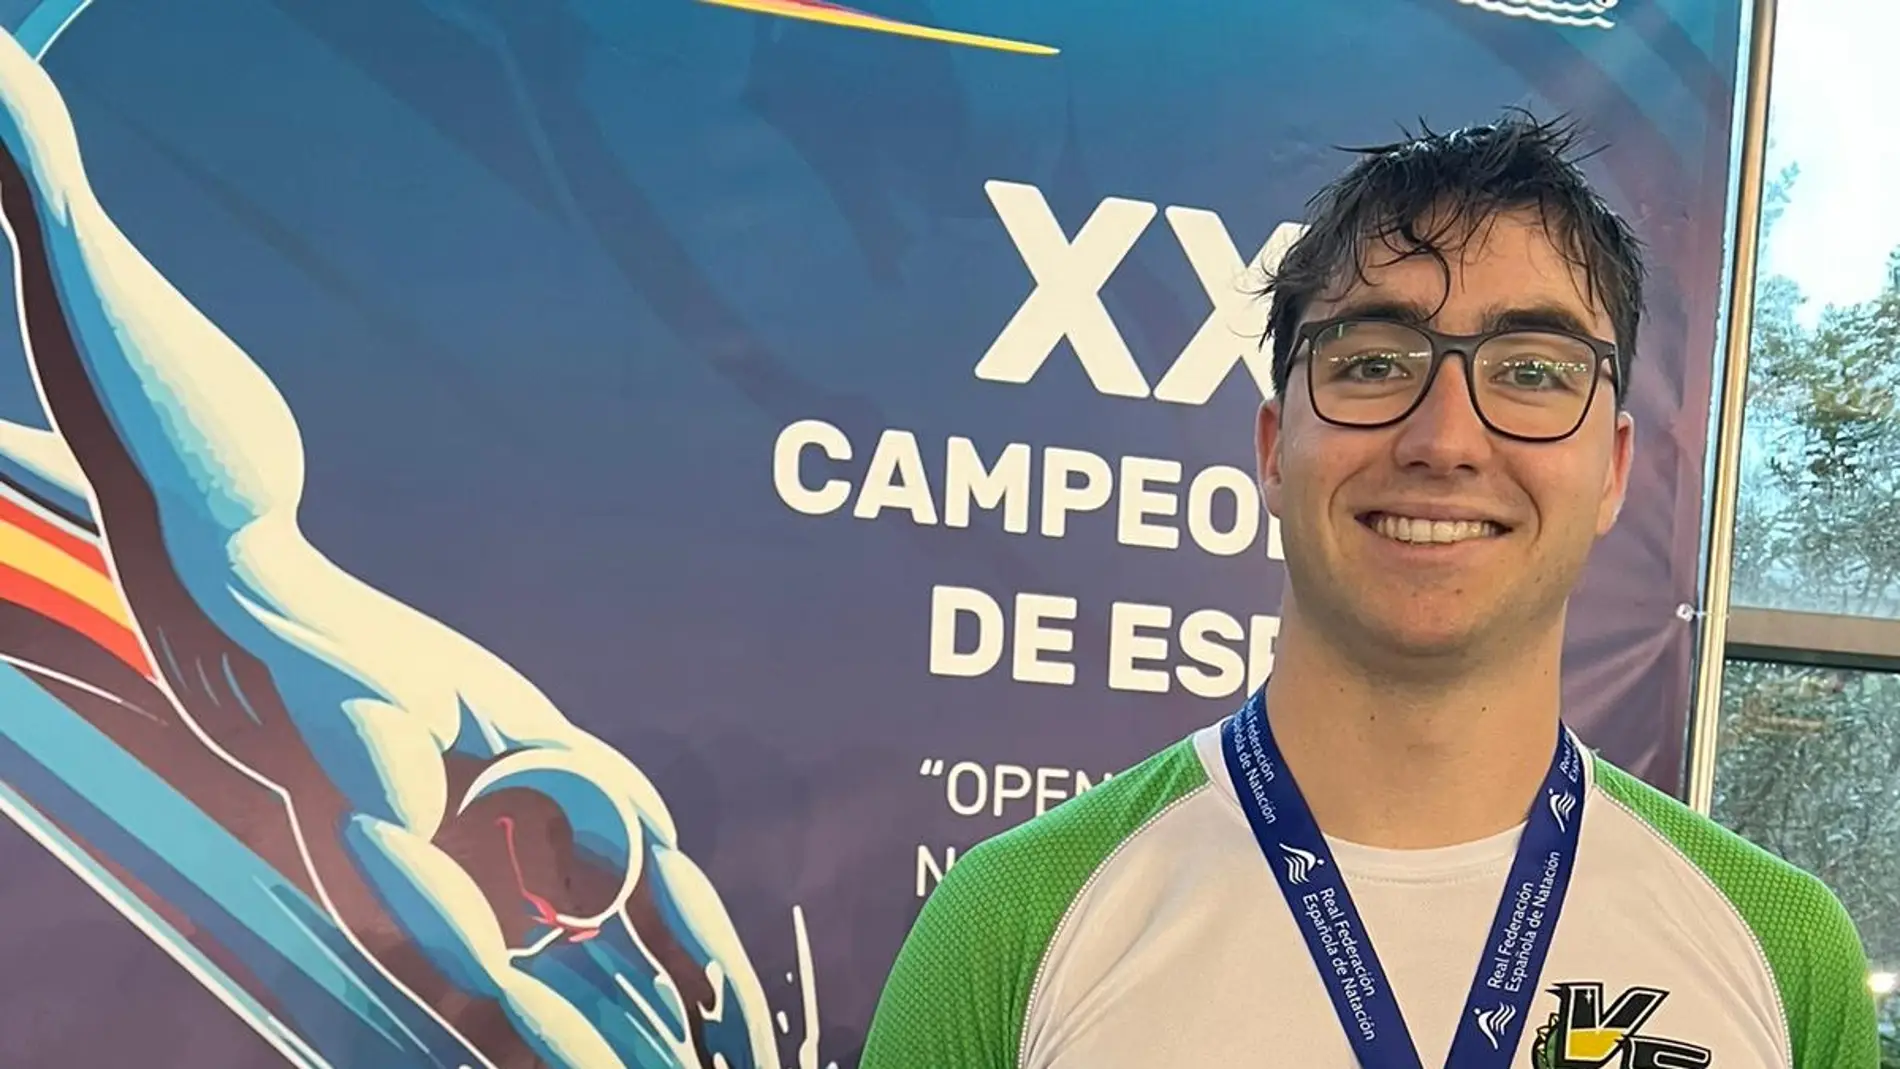 Miguel Bou, campeón de España en Aguas Abiertas en 3.000 metros Premáster.